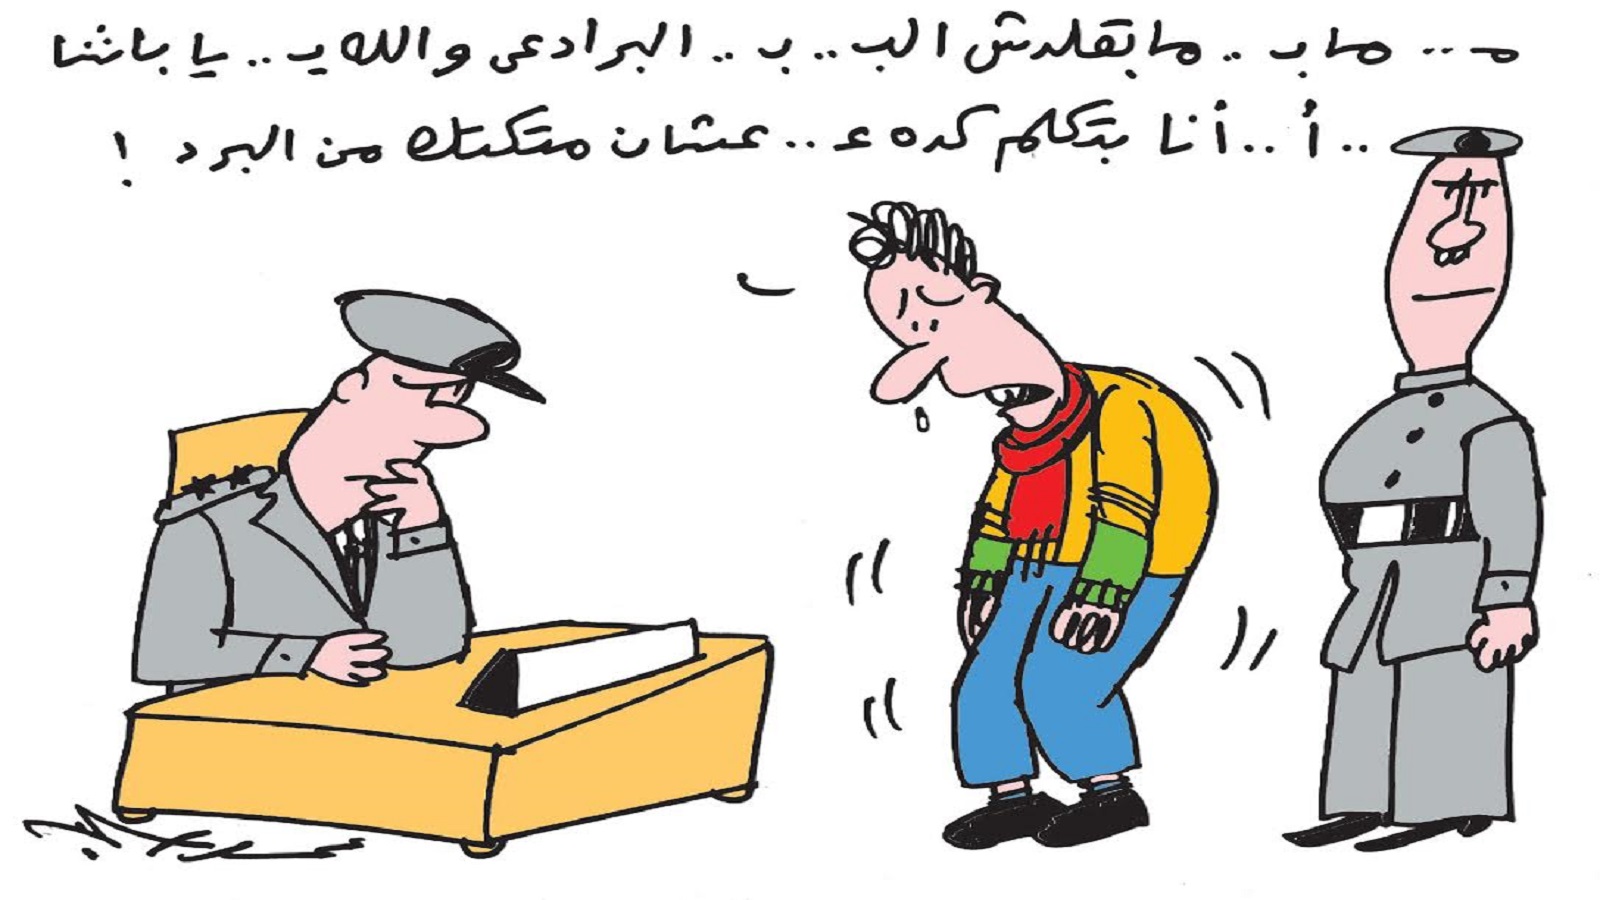 عمرو سليم: الكاريكاتير منزوعاً من صفته